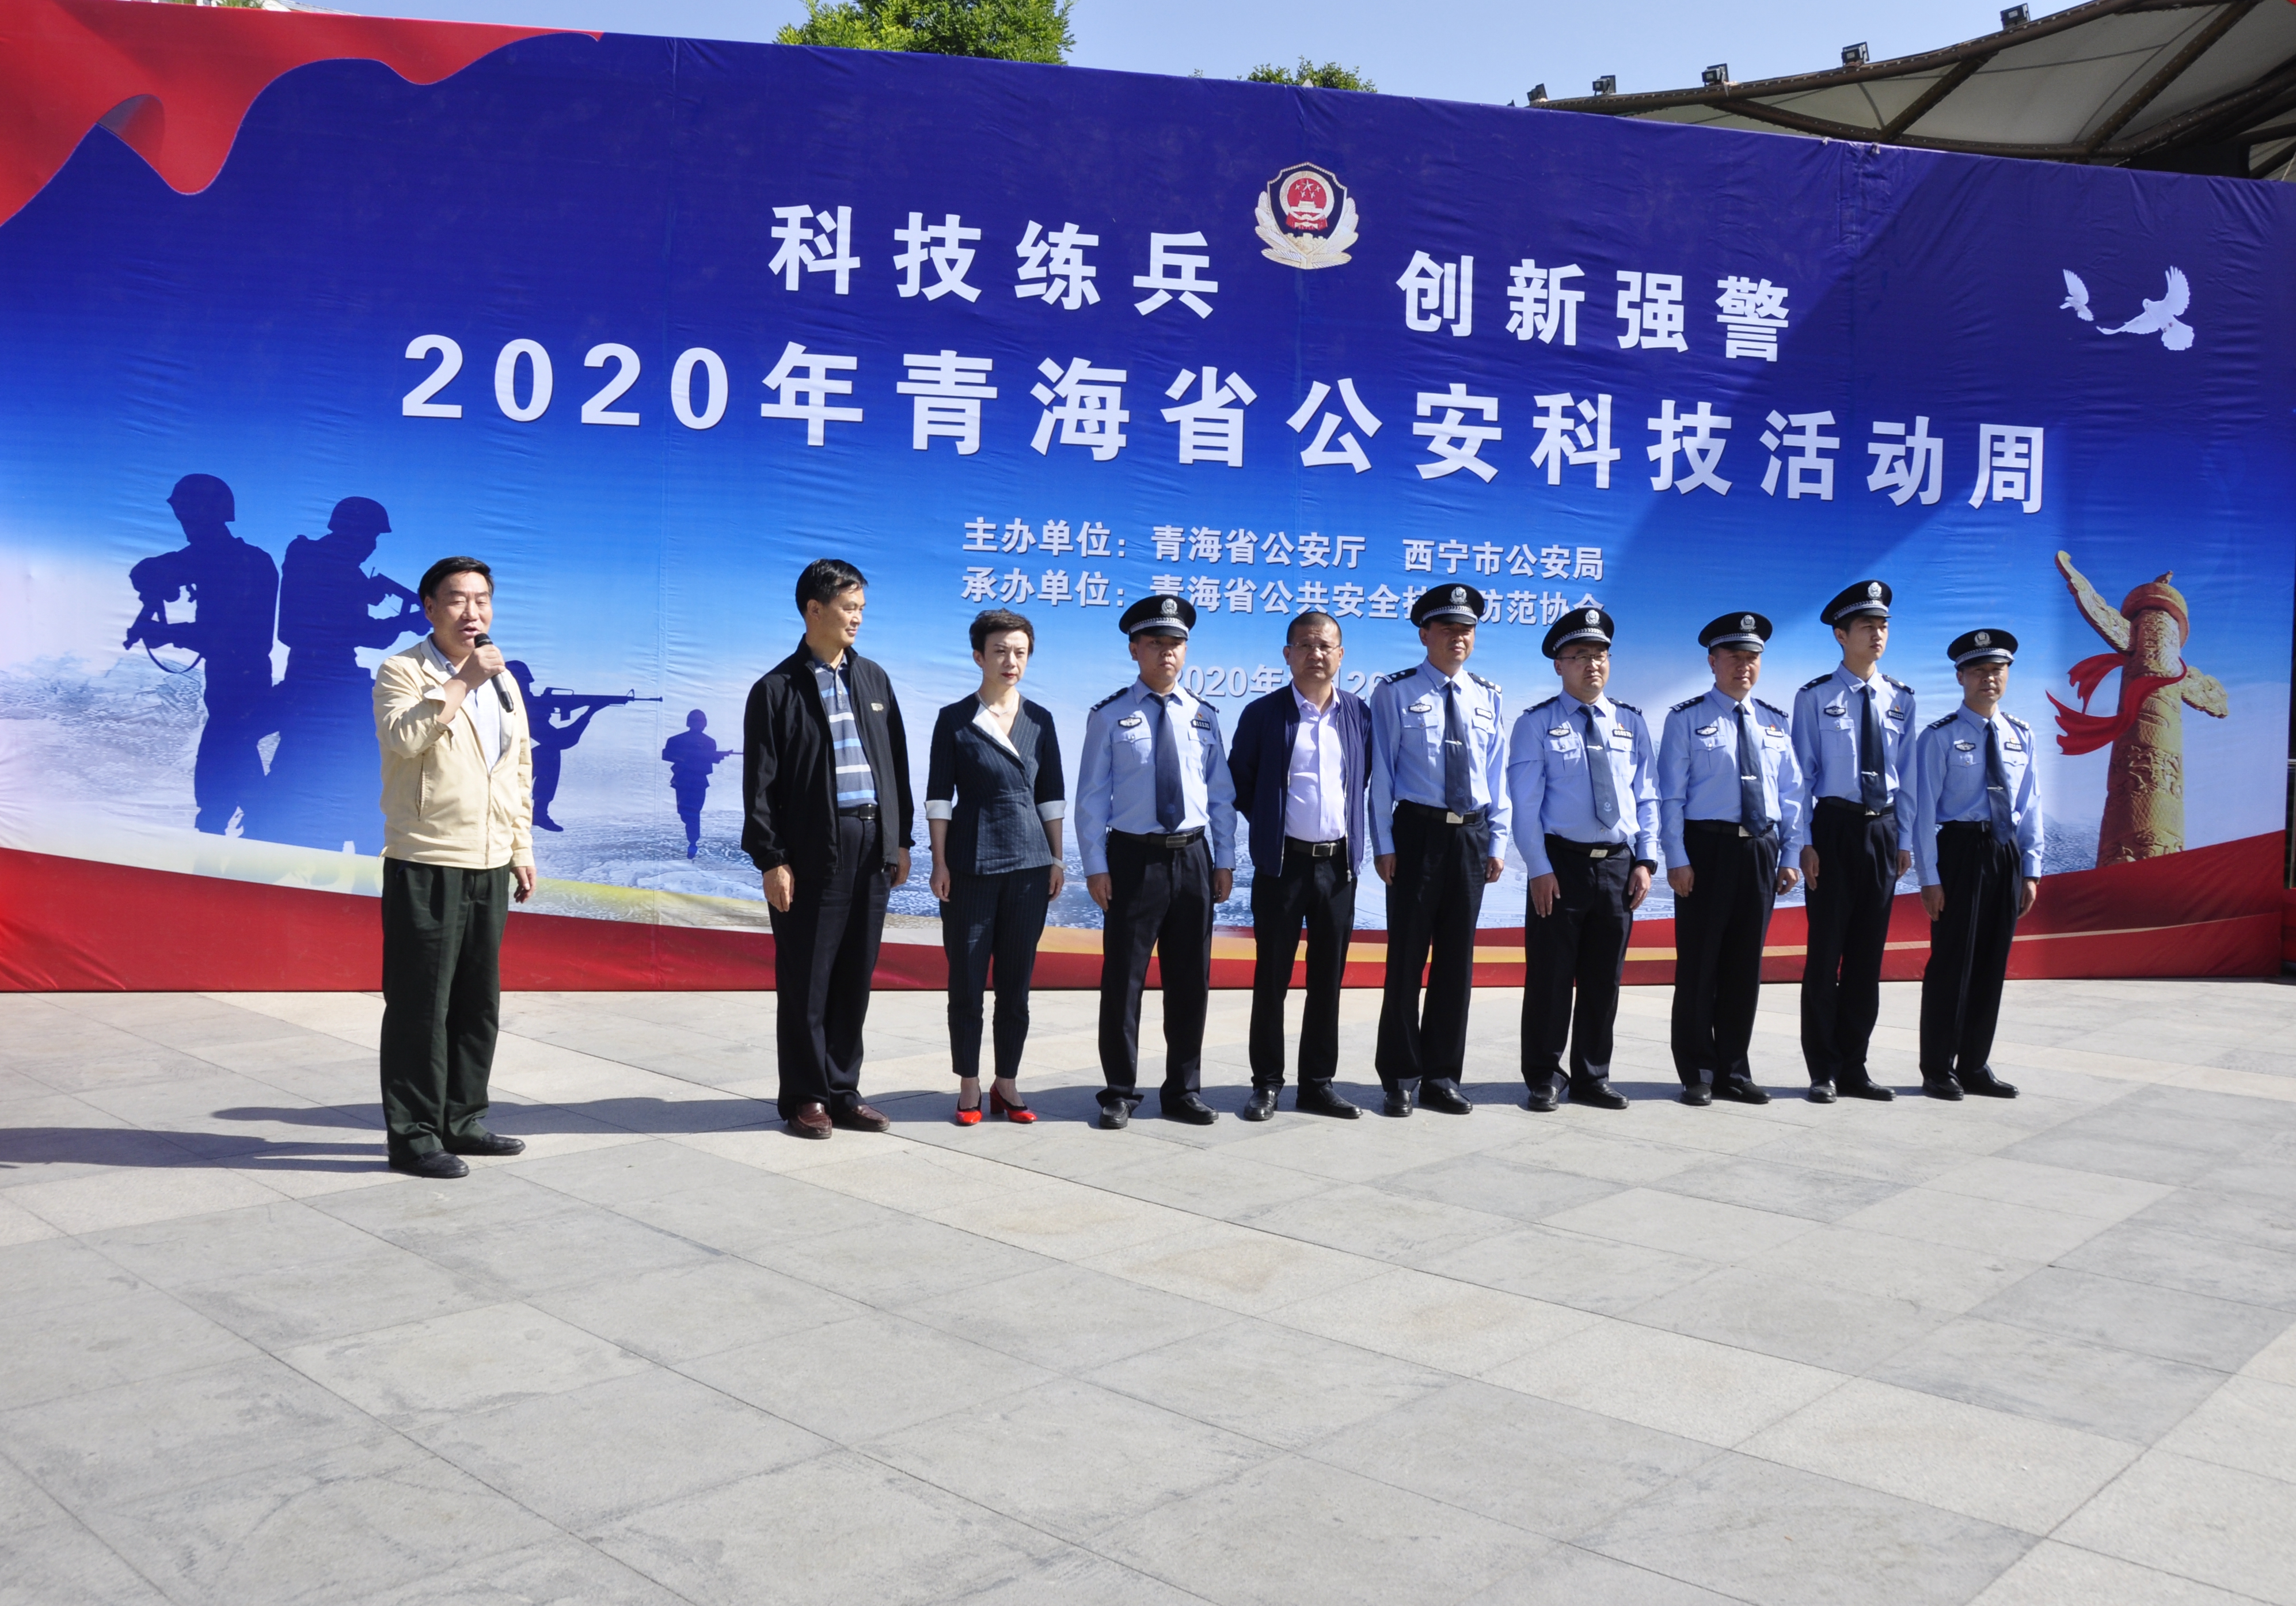 2020年青海省公安科技活动周活动市民零距离感受公安科技成果